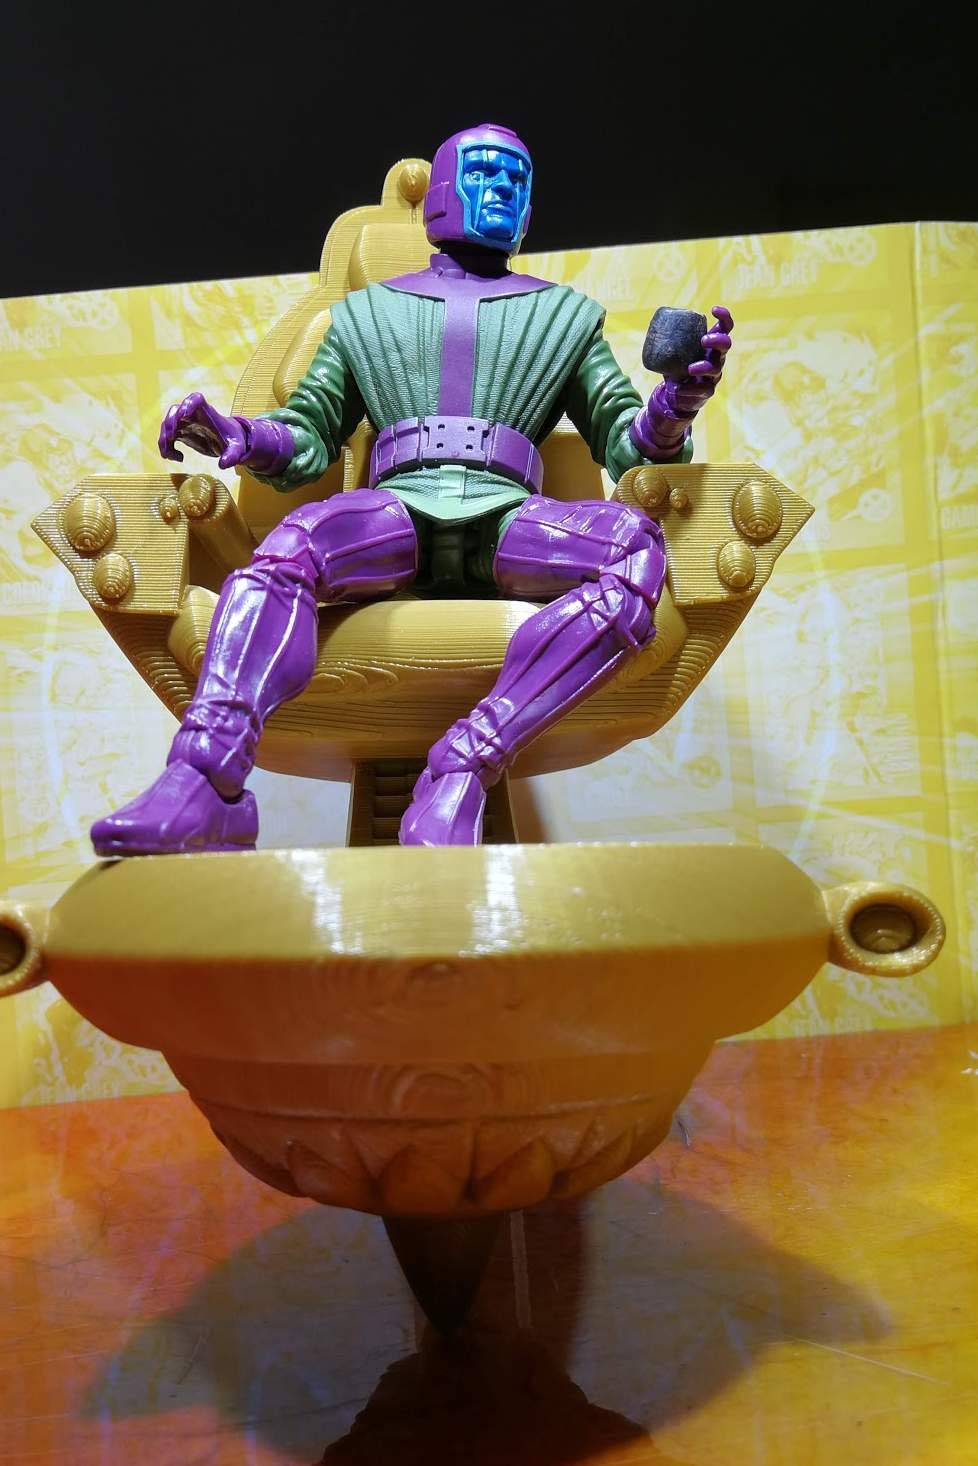 Kang the Conqueror Throne 3D model 3D printable